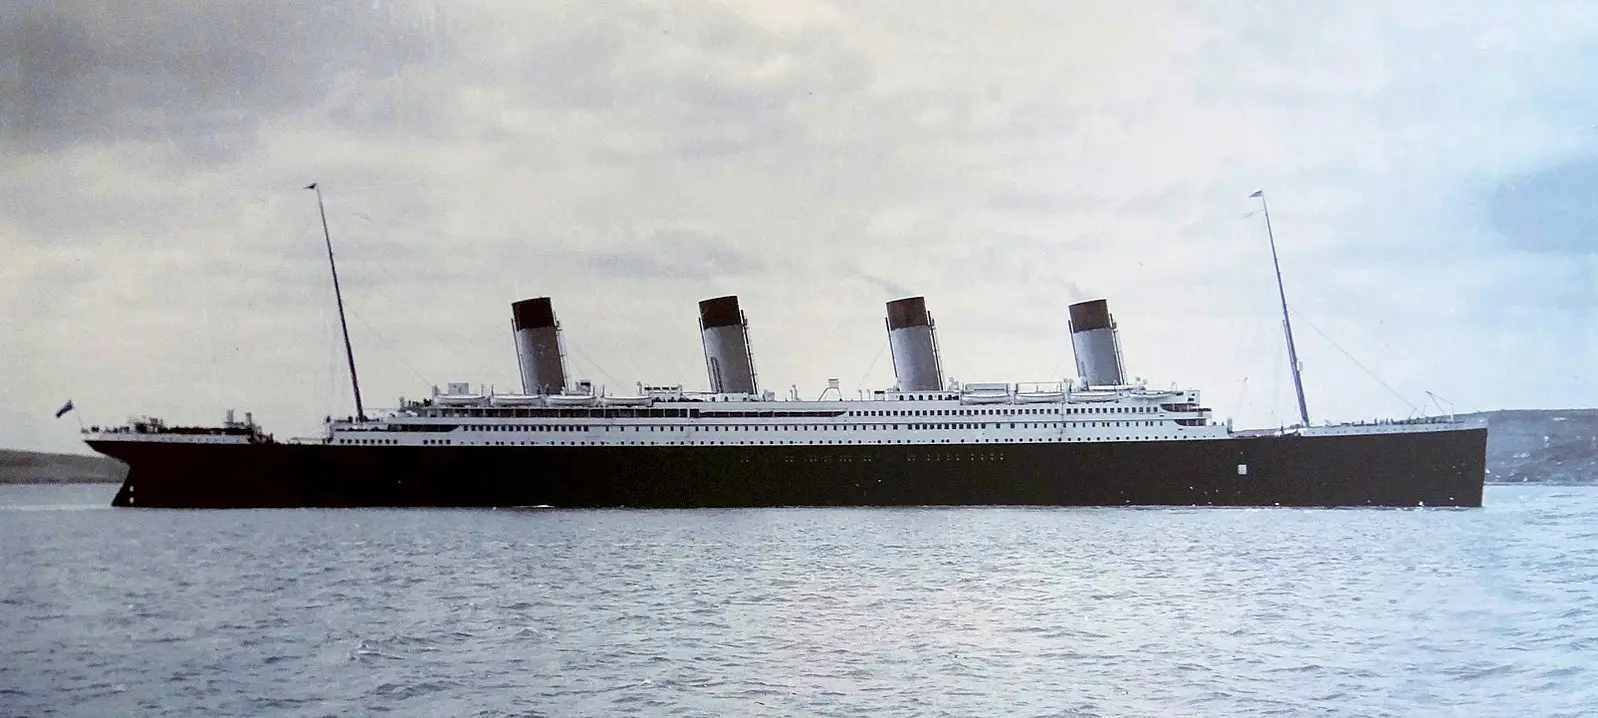 The Titanic pictured in Cobh Harbour, 11 april 1912